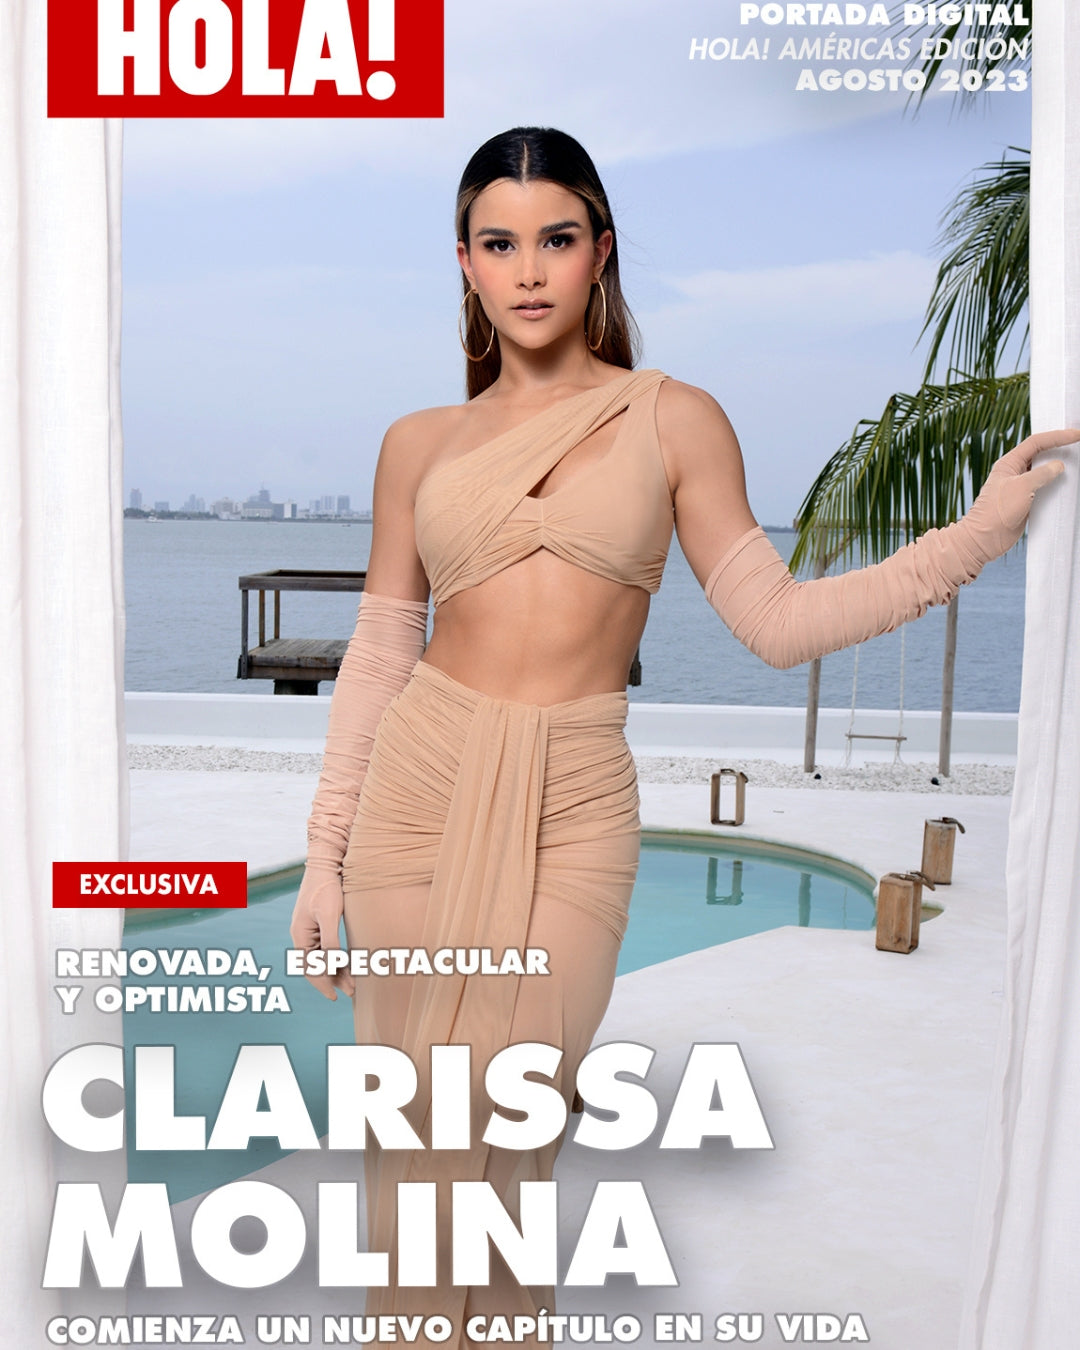 Clarissa Molina pagina web - noticia - hola